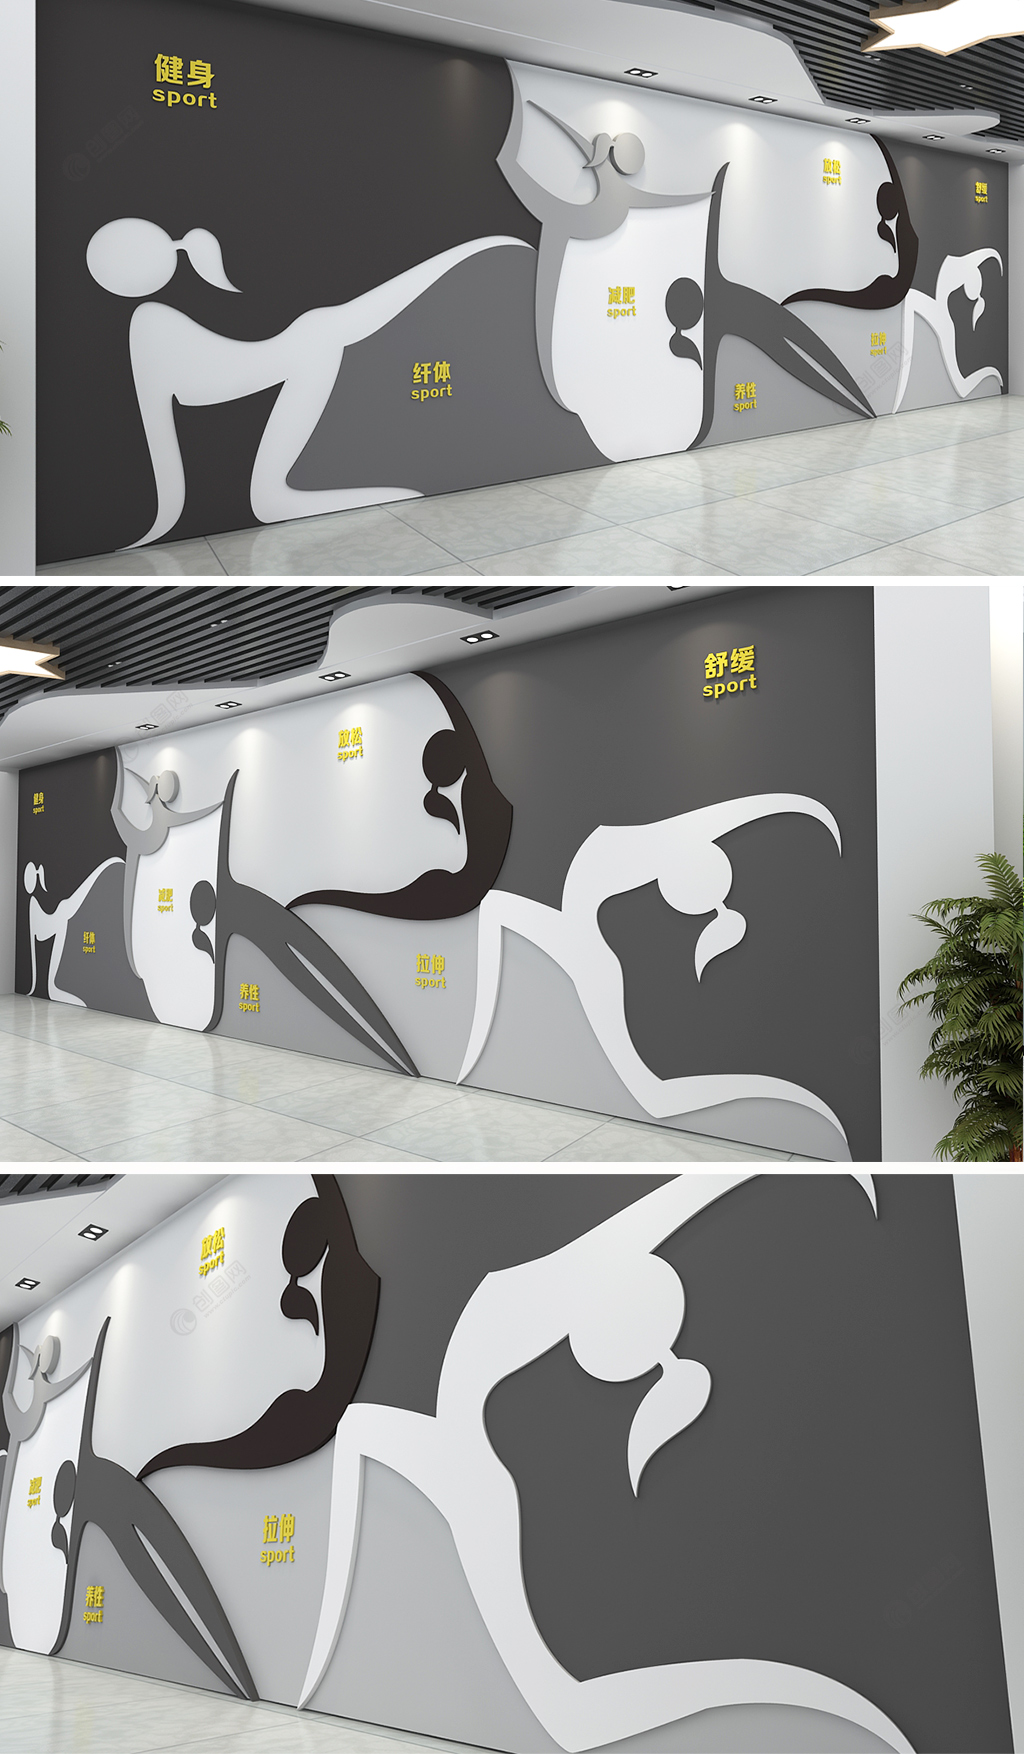 大气酷黑体育健身房文化墙效果图